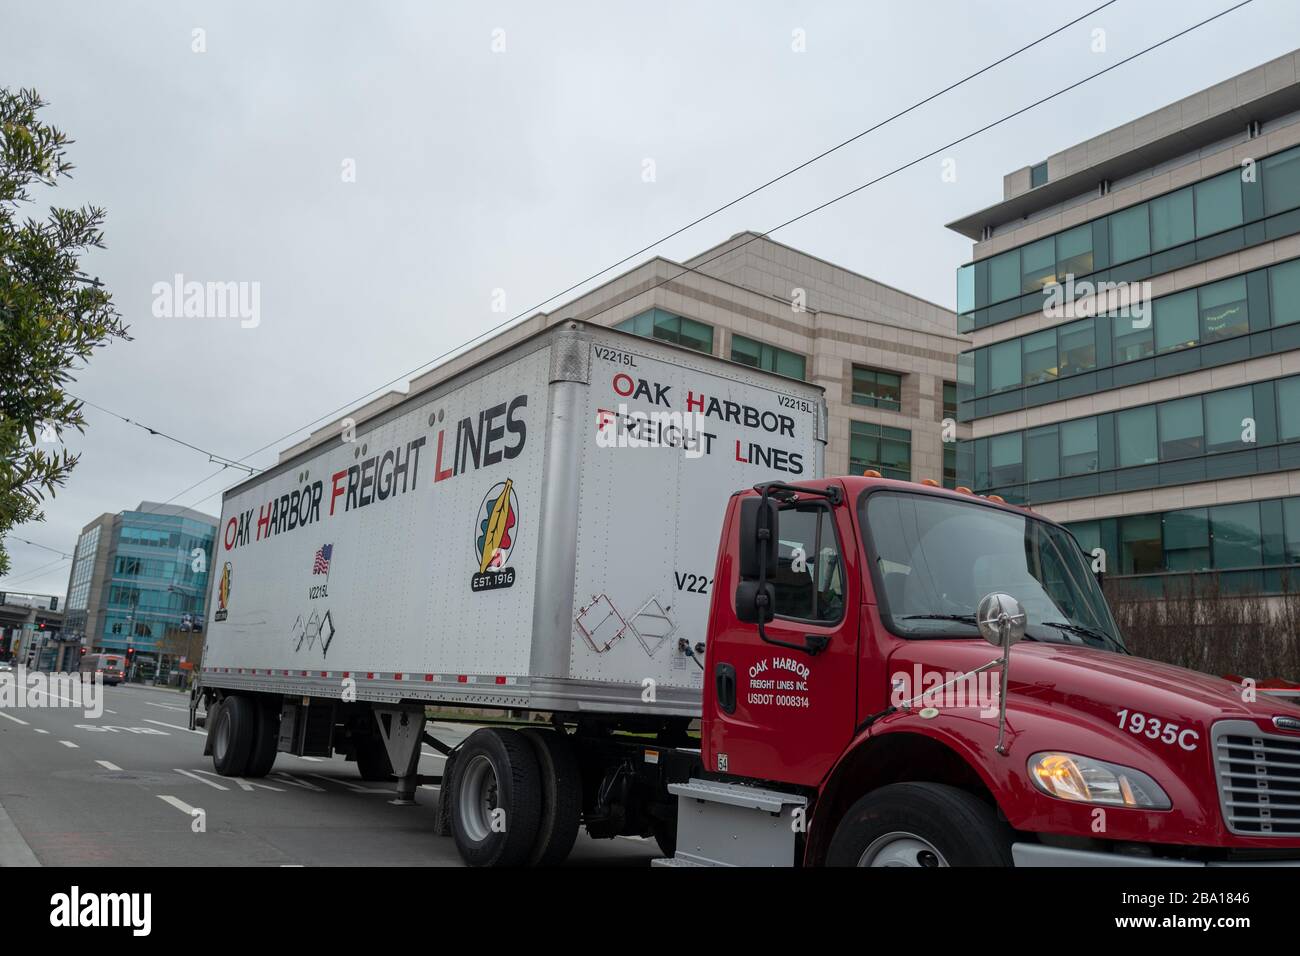 Oak Harbor Freight Lines Delivery Truck, der als wesentliches Servicegeschäft gilt, während eines Ausbruchs des COVID-19 Coronavirus in San Francisco, Kalifornien, 23. März 2020. () Stockfoto